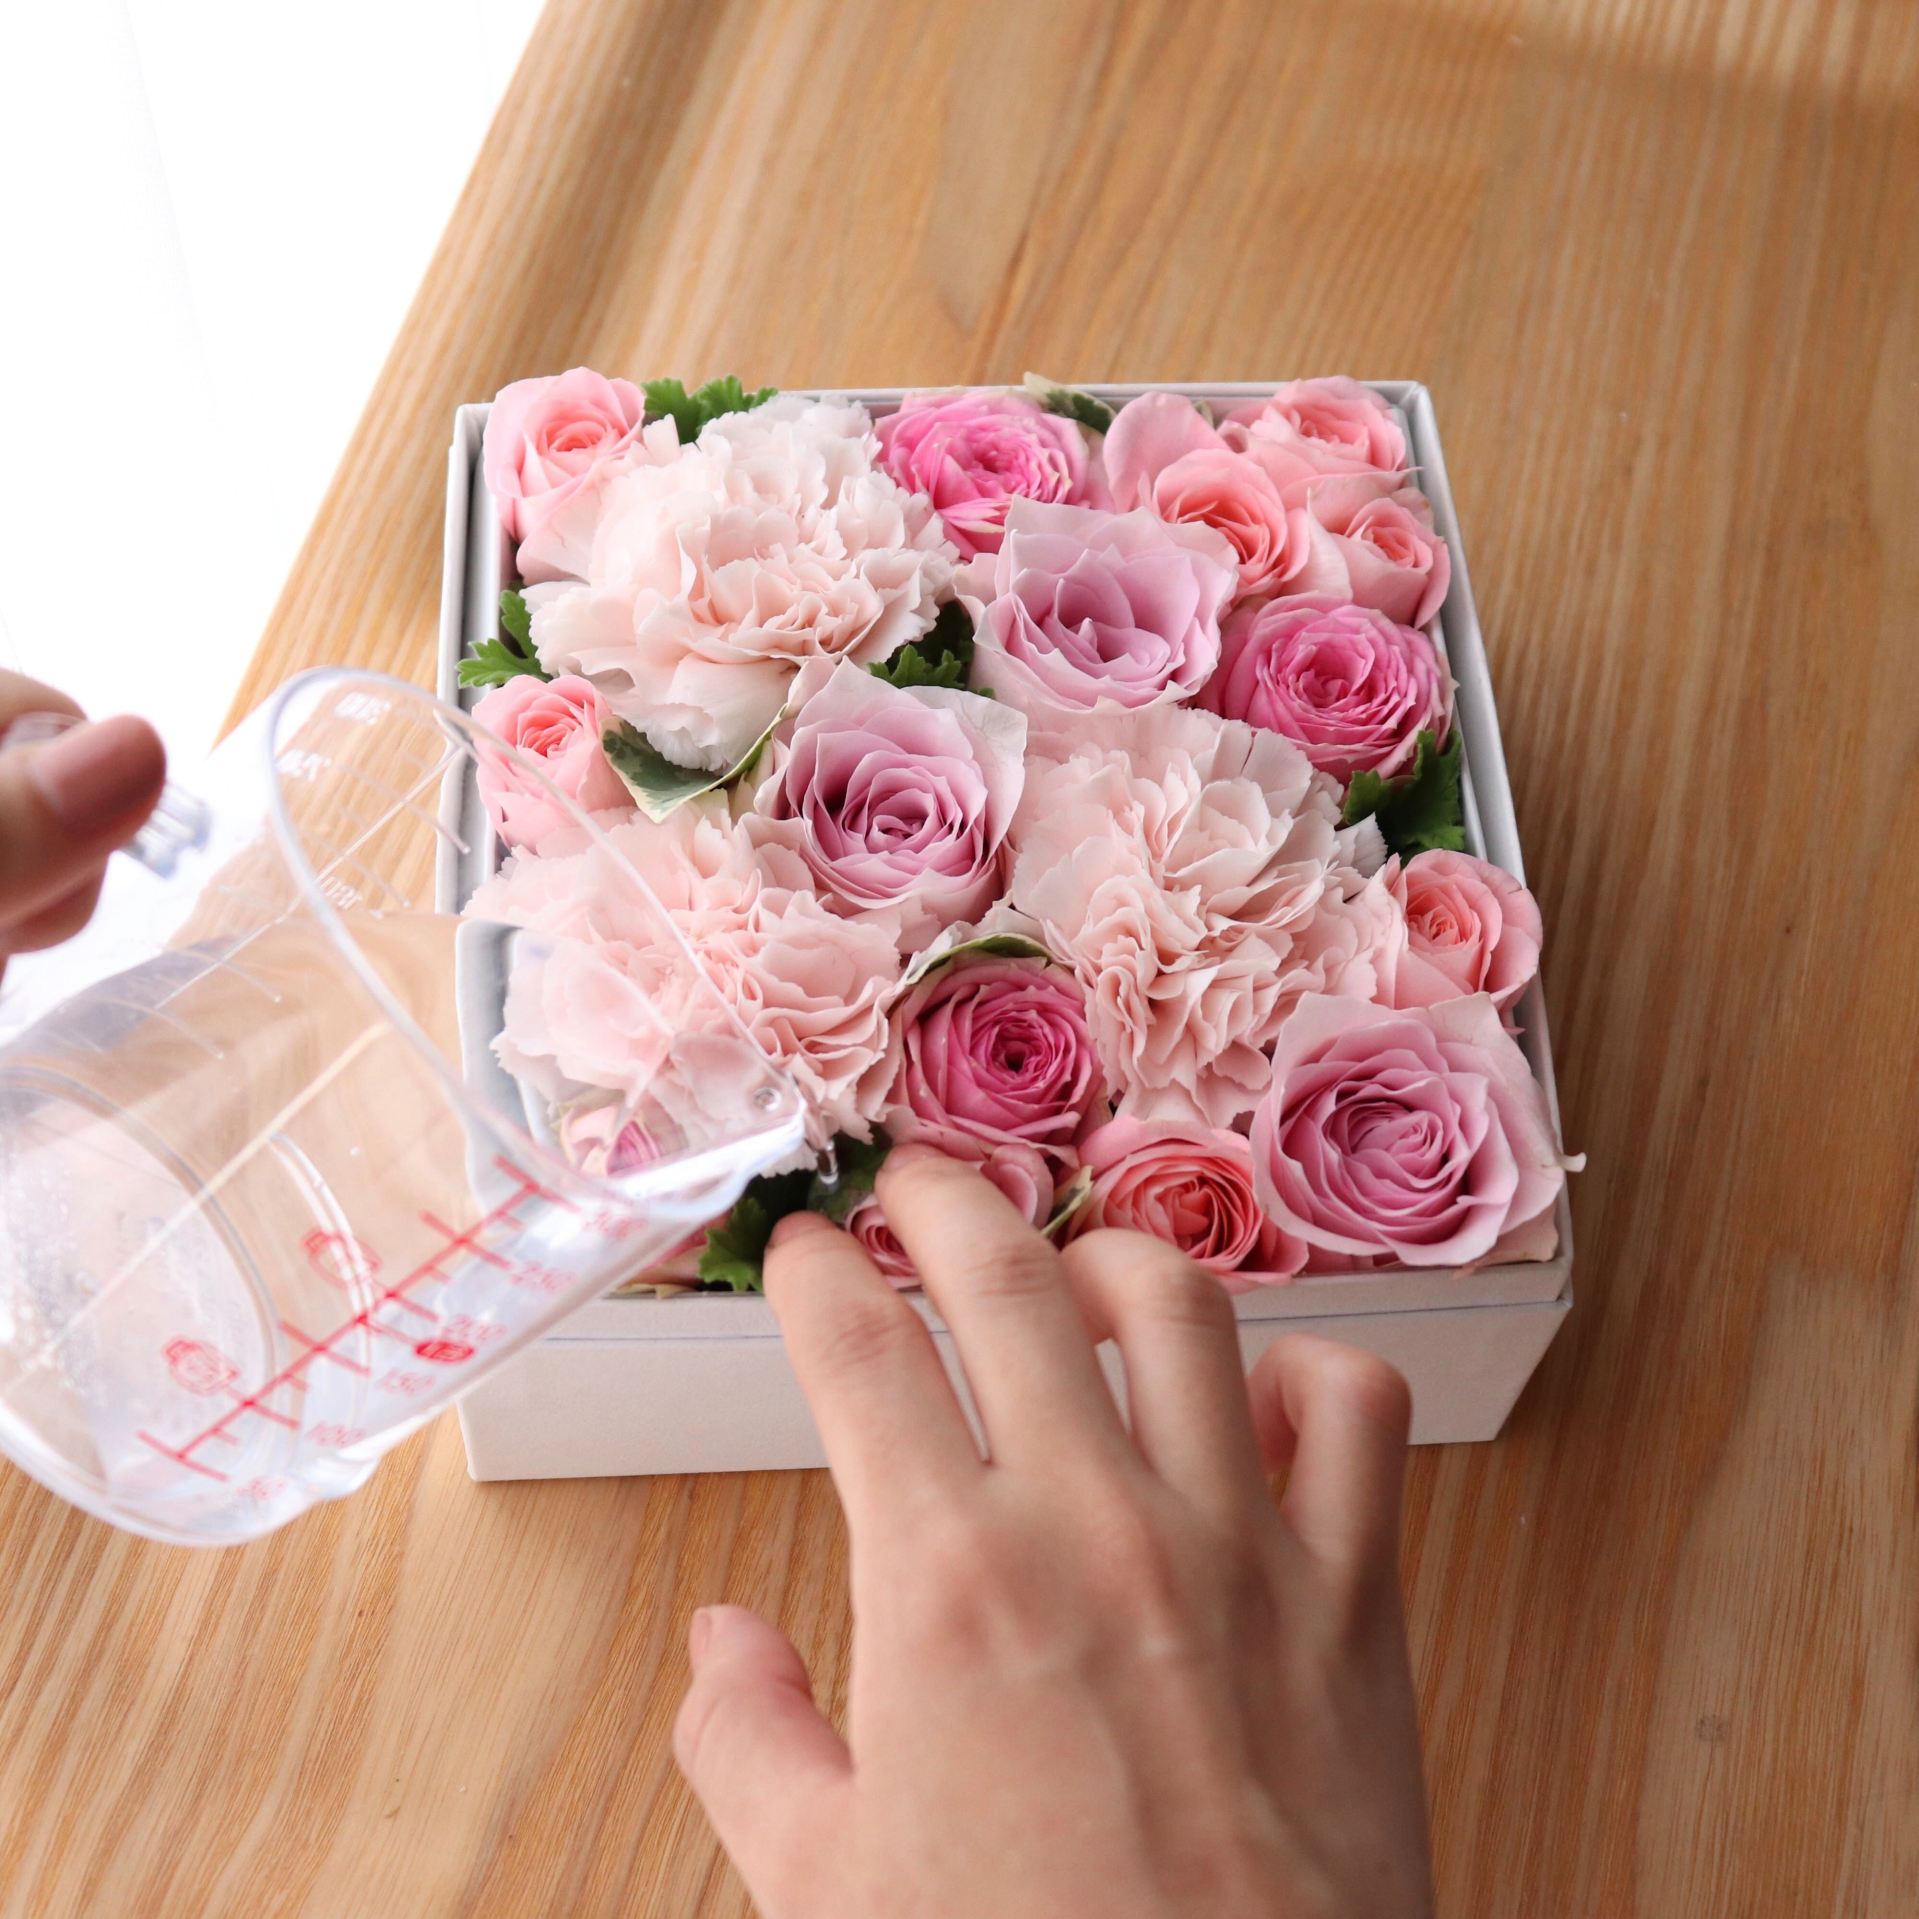 簡単に長持ち 切り花 のお手入れ方法 花束 アレンジメント フラワーボックス別 花だより